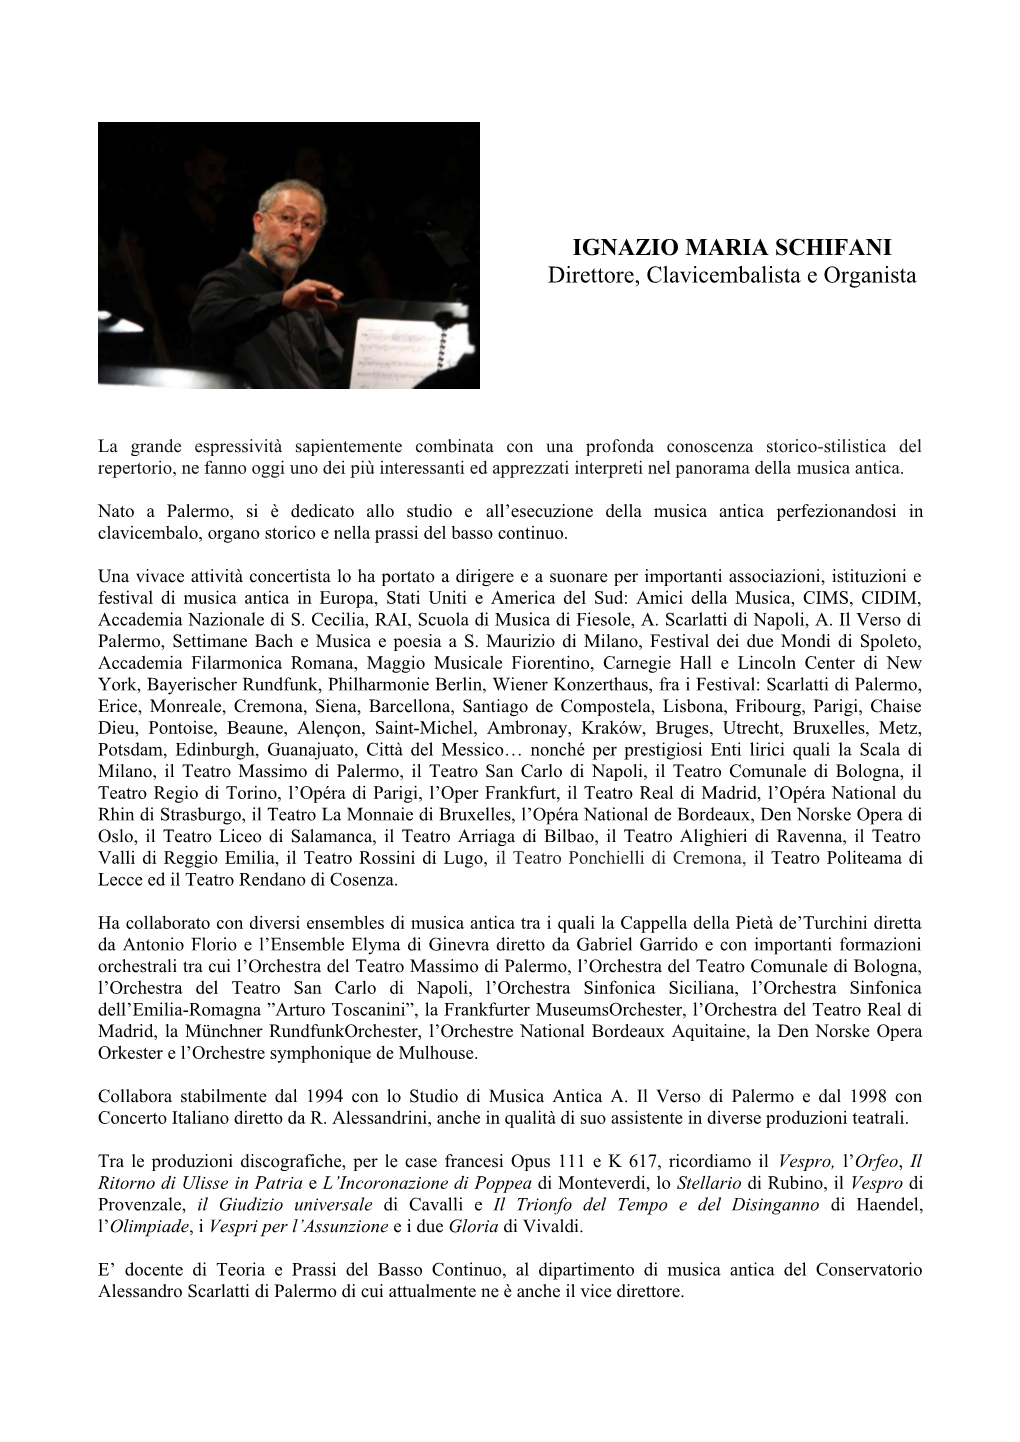 IGNAZIO MARIA SCHIFANI Direttore, Clavicembalista E Organista